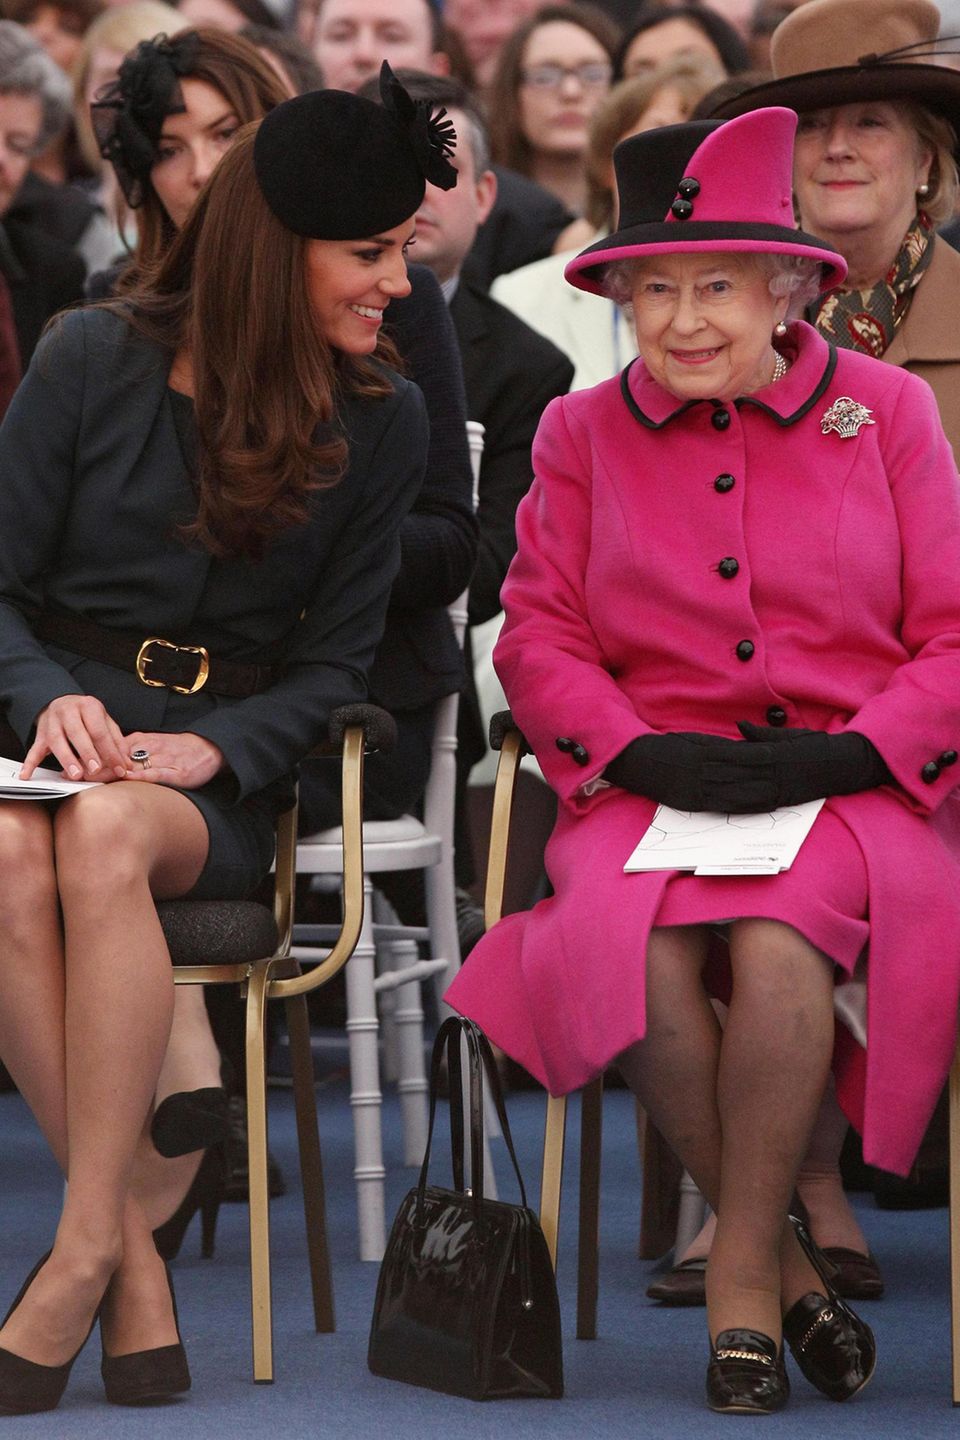 An der Seite von Herzogin Catherine scheint sich die Queen deutlich wohler zu fühlen. Die Tasche steht gut sichtbar auf der rechten Seite.